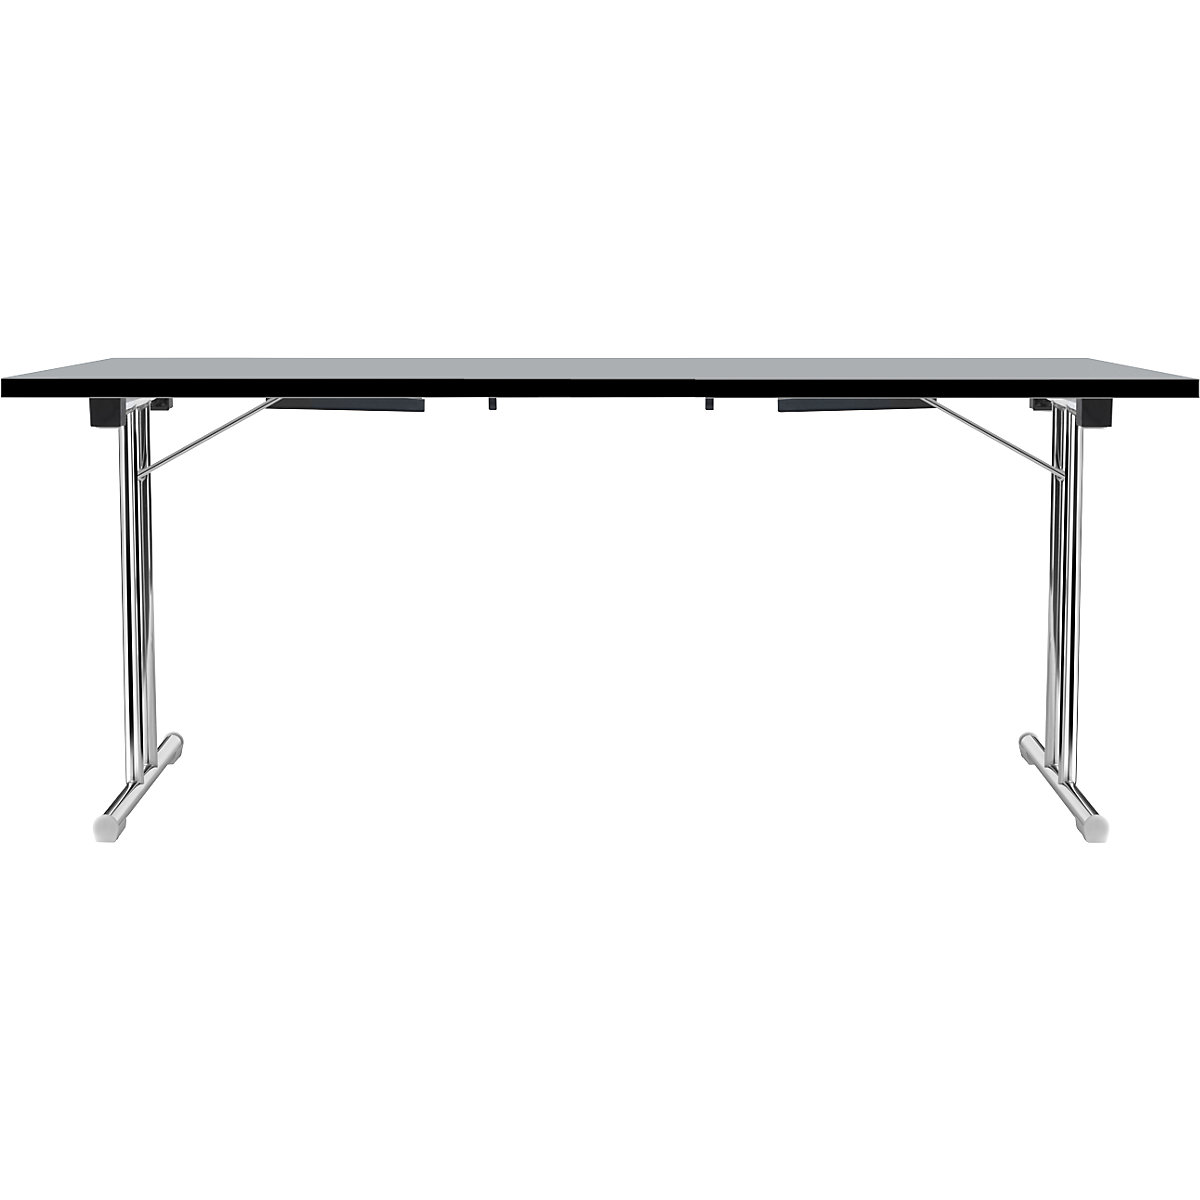 Zložljiva miza z dvojnim podnožjem v obliki črke T, ogrodje iz okrogle jeklene cevi, kromirano, svetlo siva/črna, ŠxG 1800 x 800 mm-17